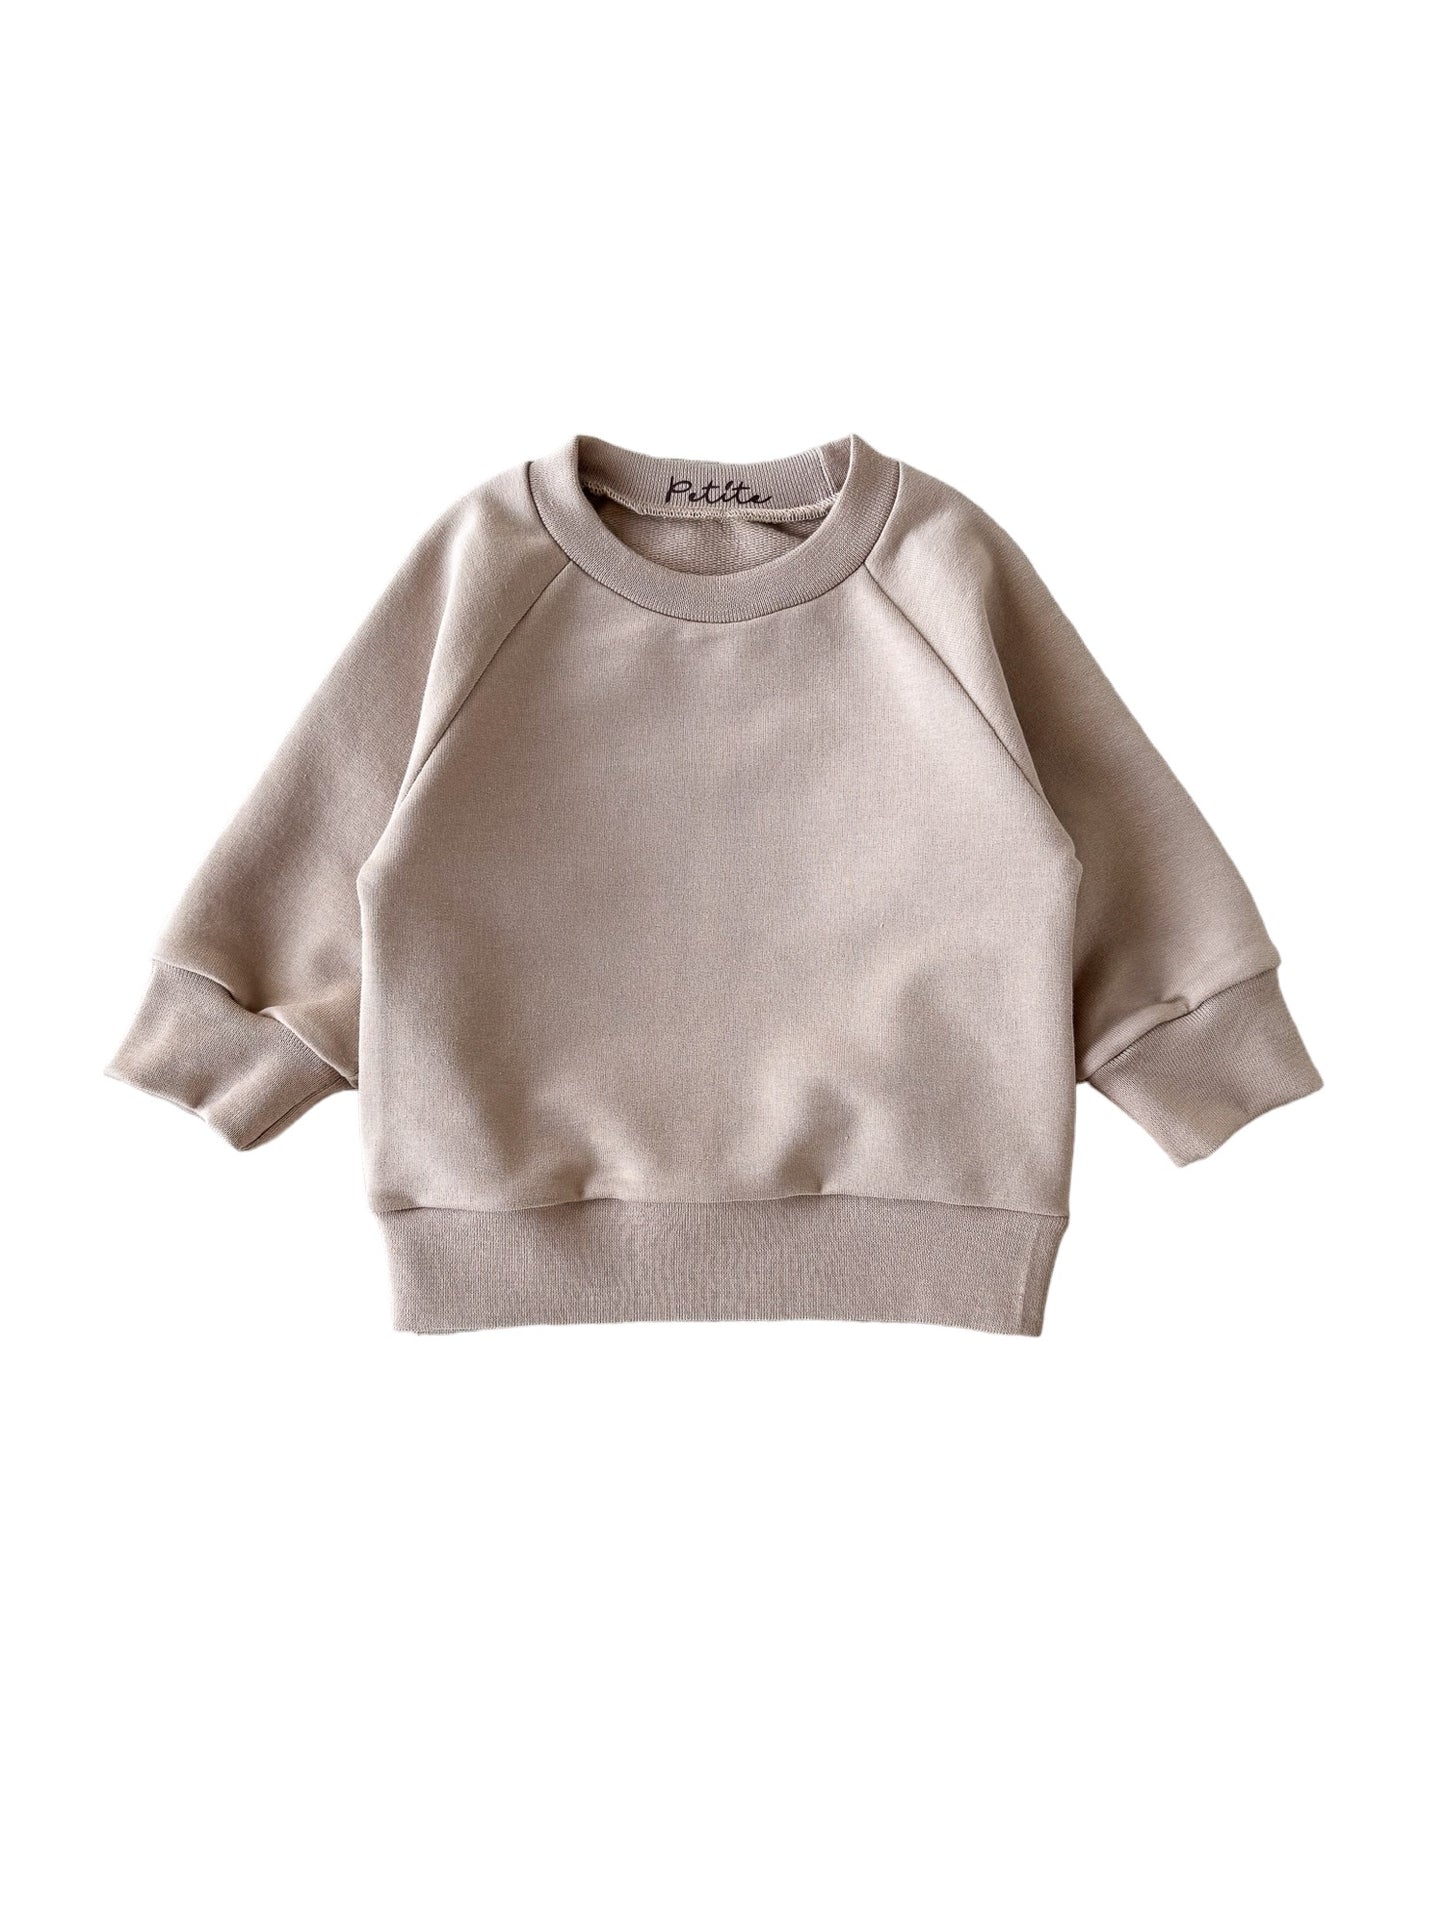 Cotton sweater / dark beige